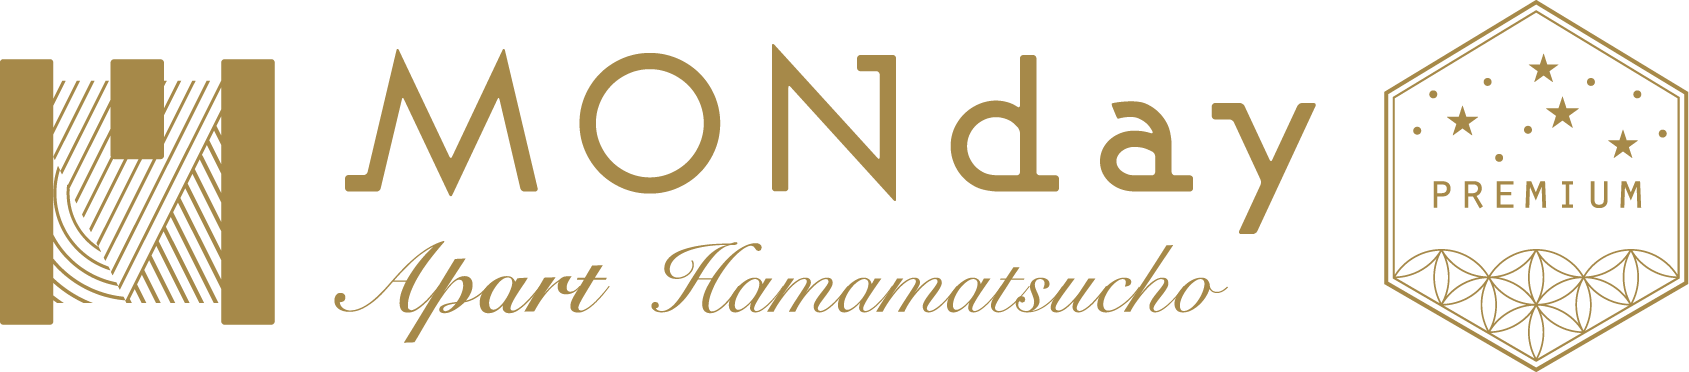 MONday Apart Premium Hamamatsucho